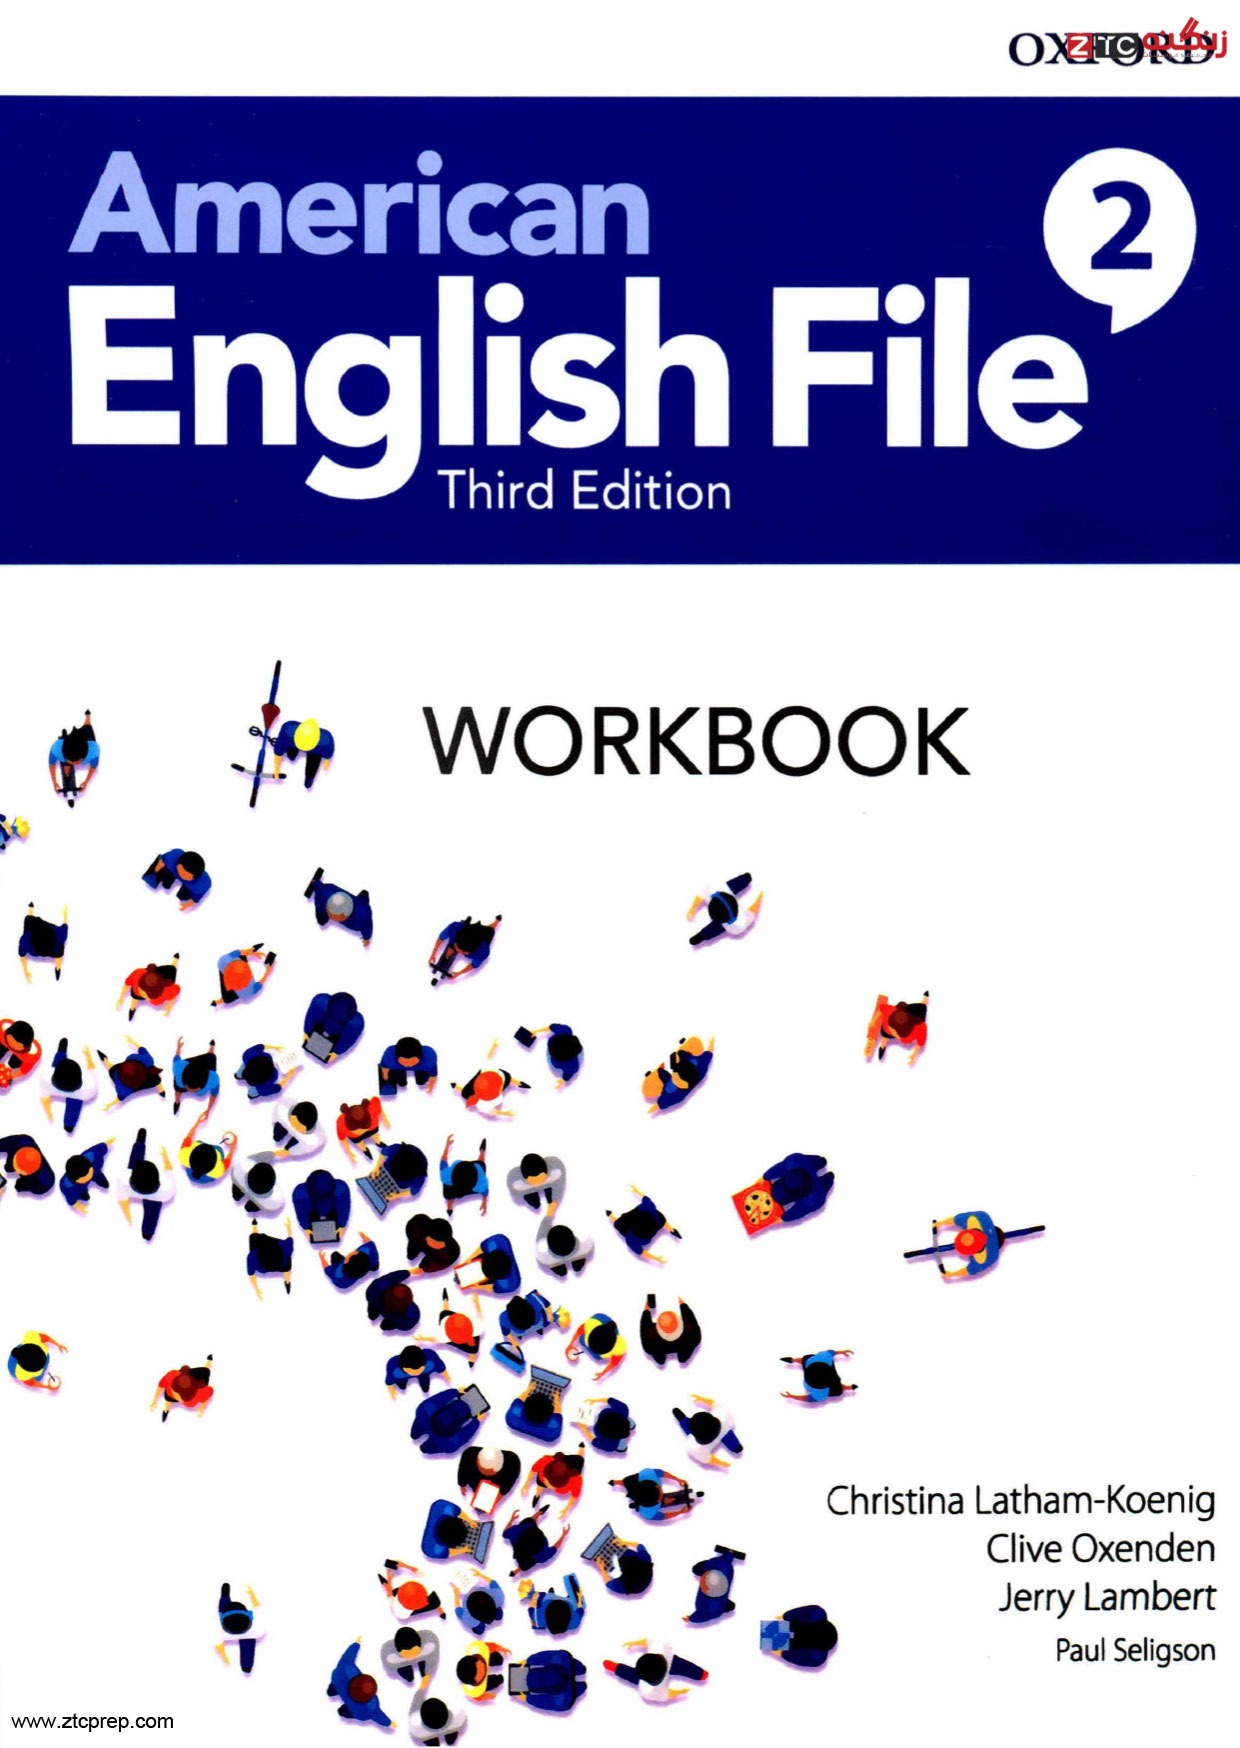 American English File 2 Work Book ویرایش سوم